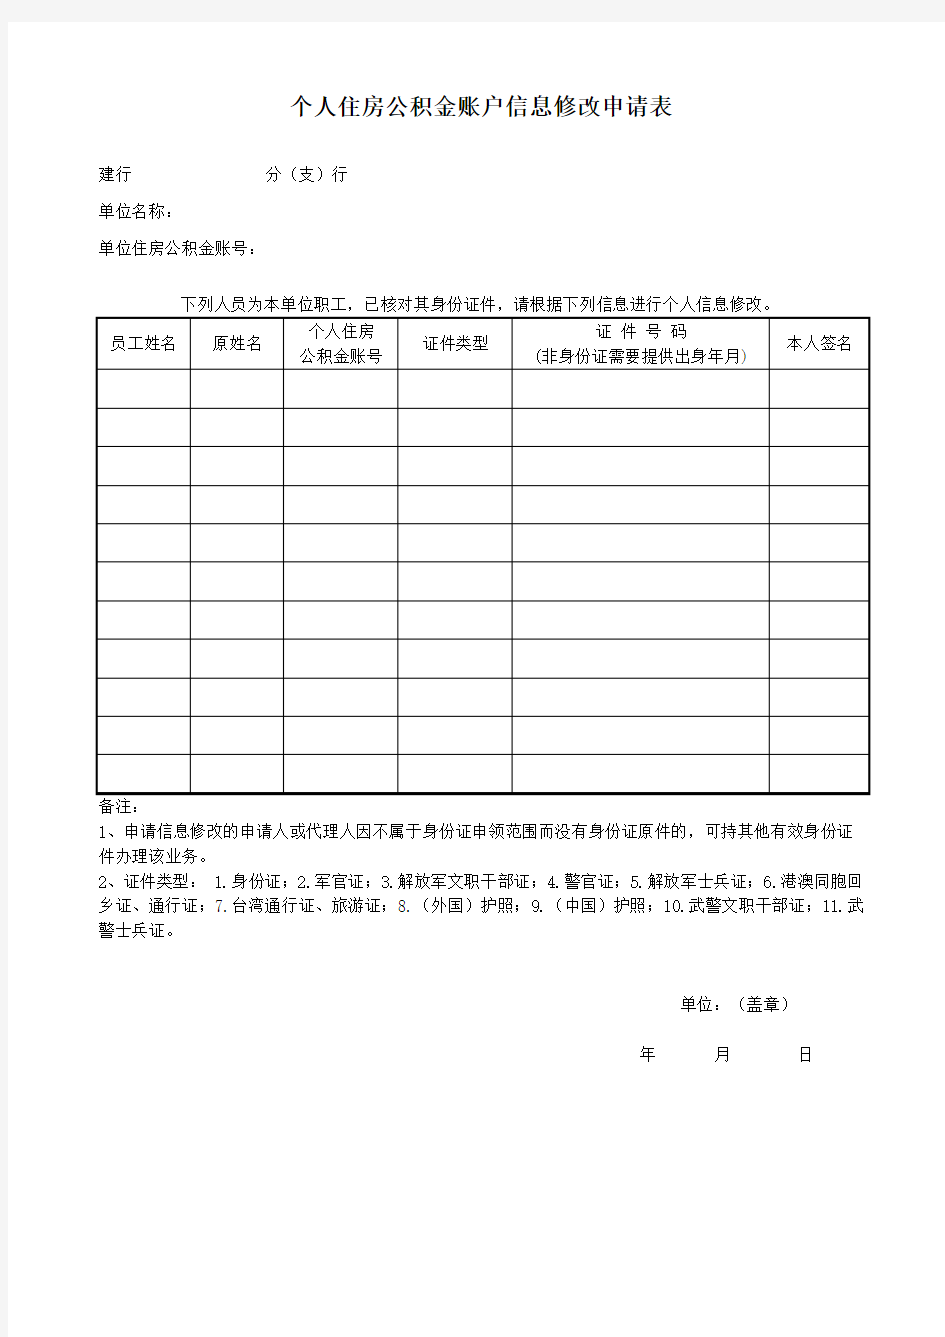 上海市个人住房公积金账户信息修改申请表